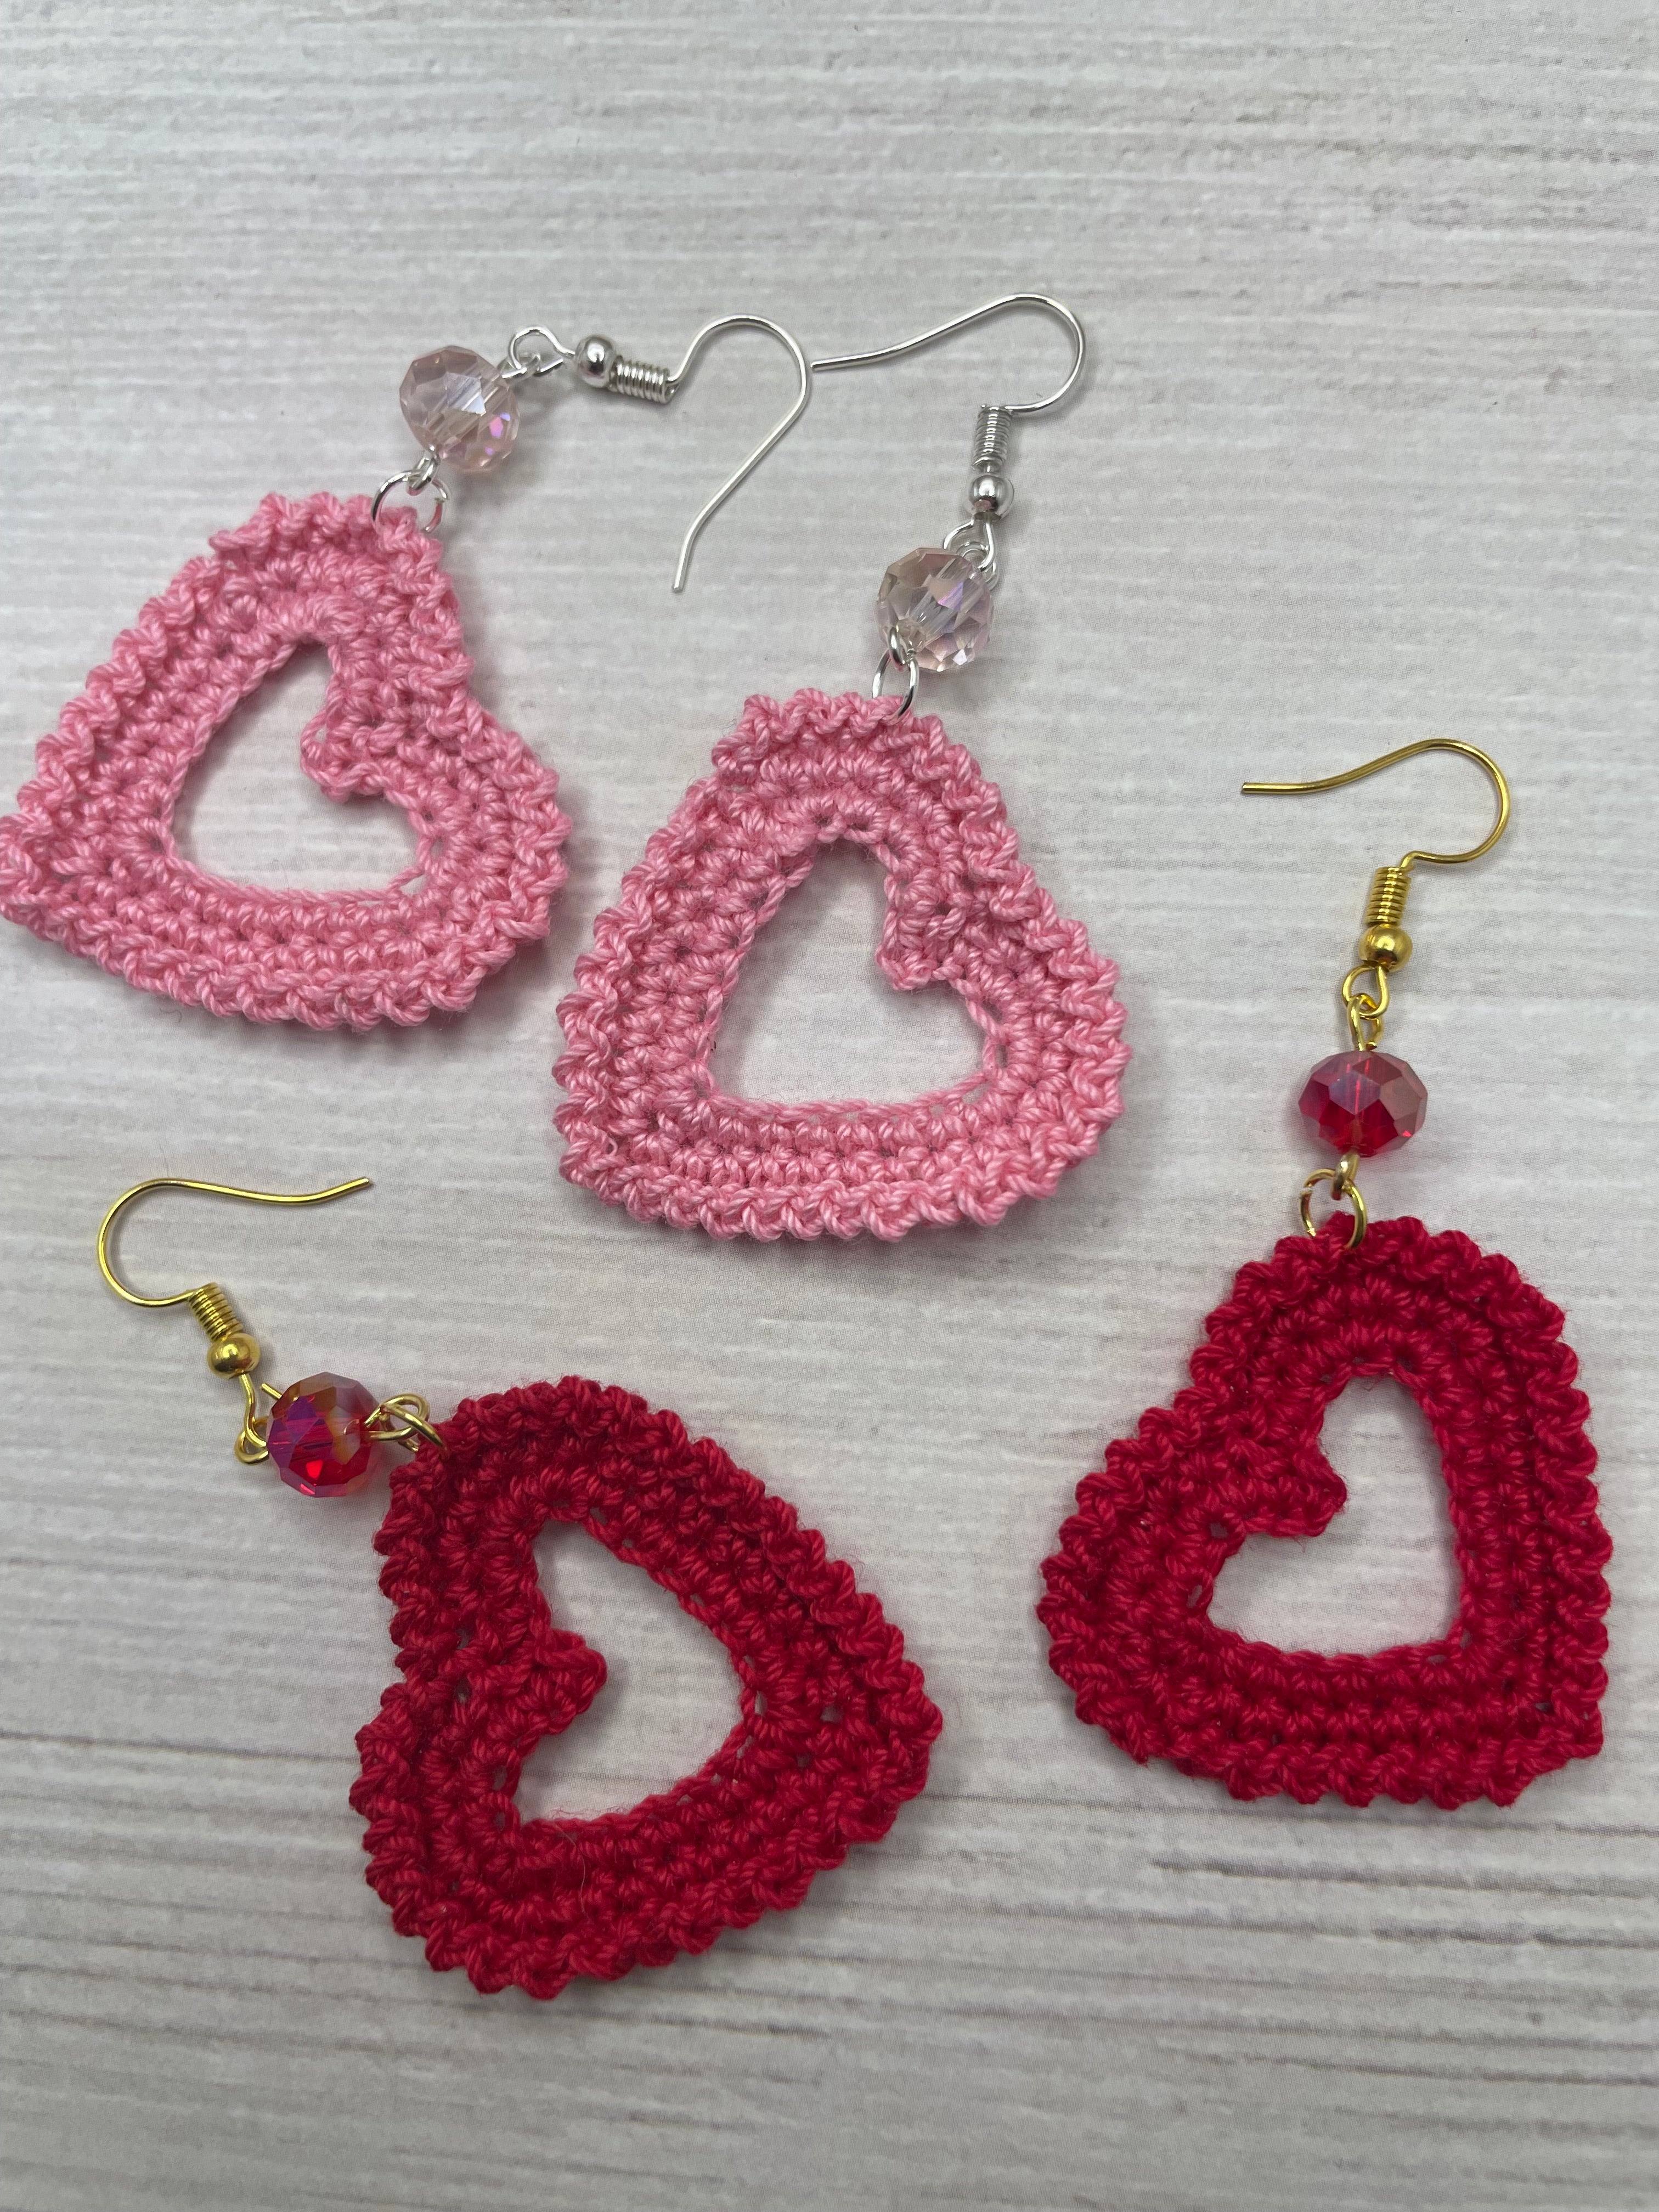 130. ONE Crochet Earrings Pattern, Crochet Earring Pattern, PDF File Crochet  Sunflower Earrings, Easy Pattern, Crochet Earrings Tutorial - Etsy